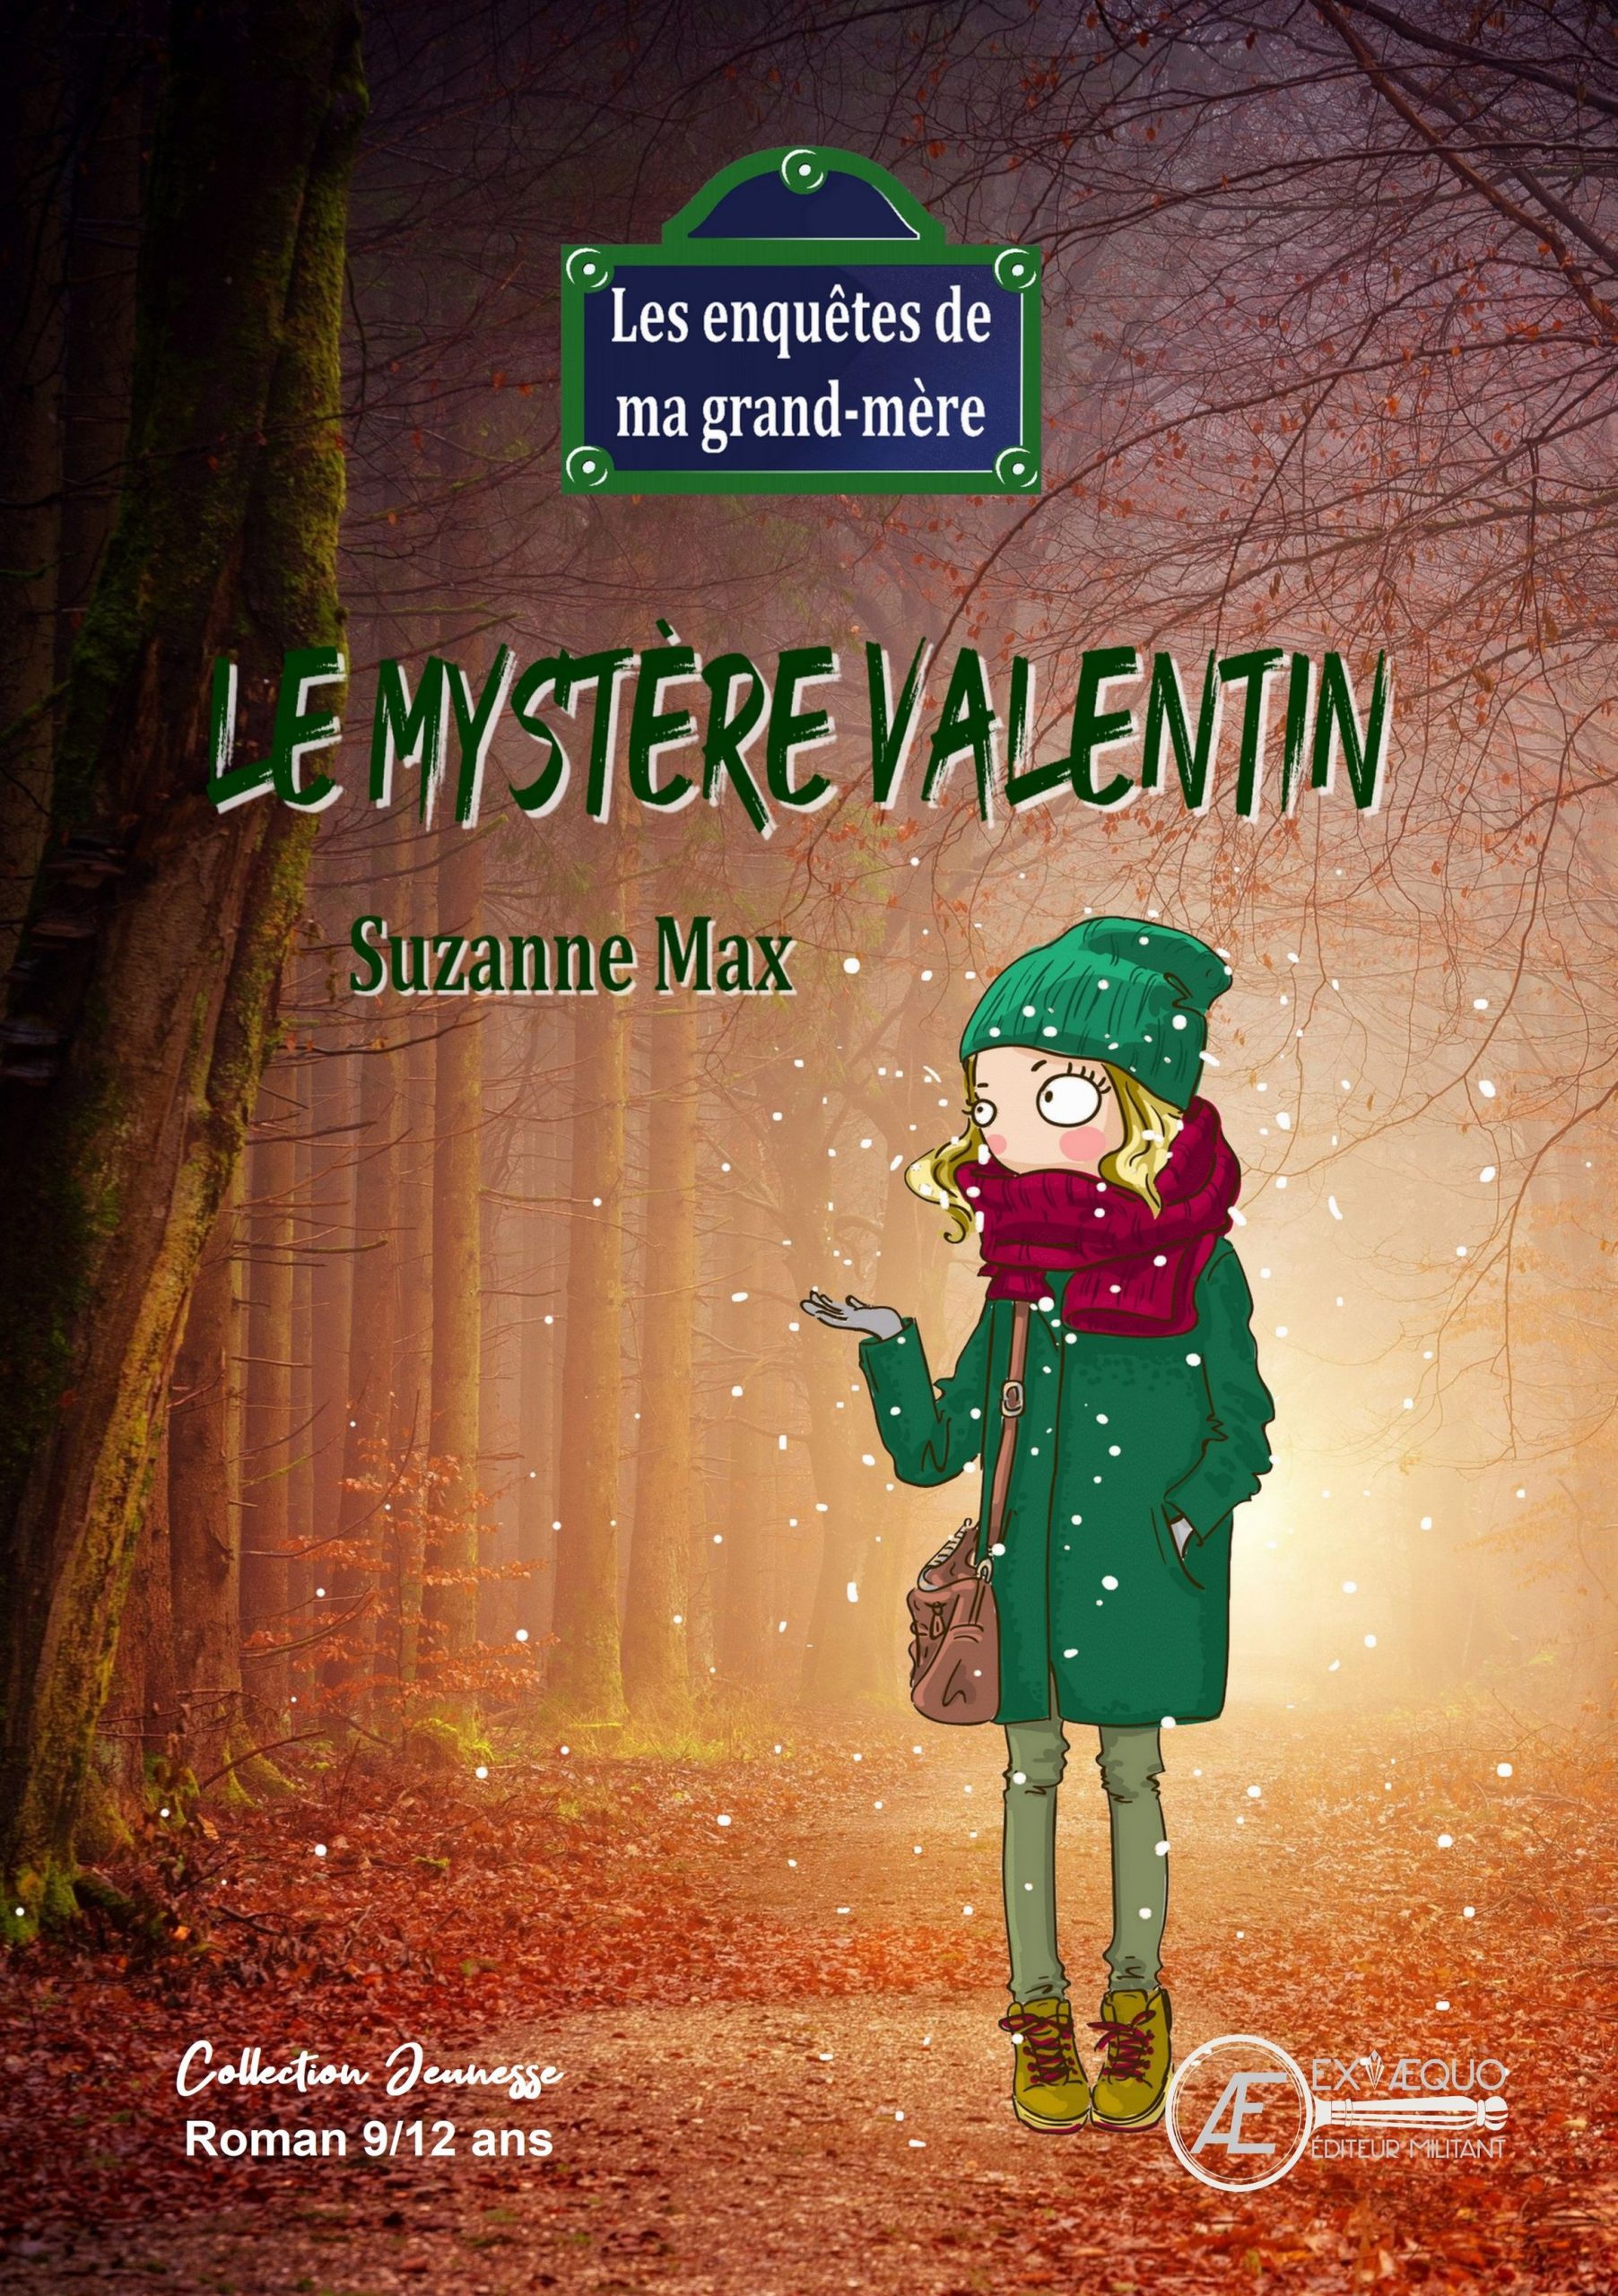 You are currently viewing Les enquêtes de ma Grand-Mère – T1 Le mystère Valentin, de Suzanne Max